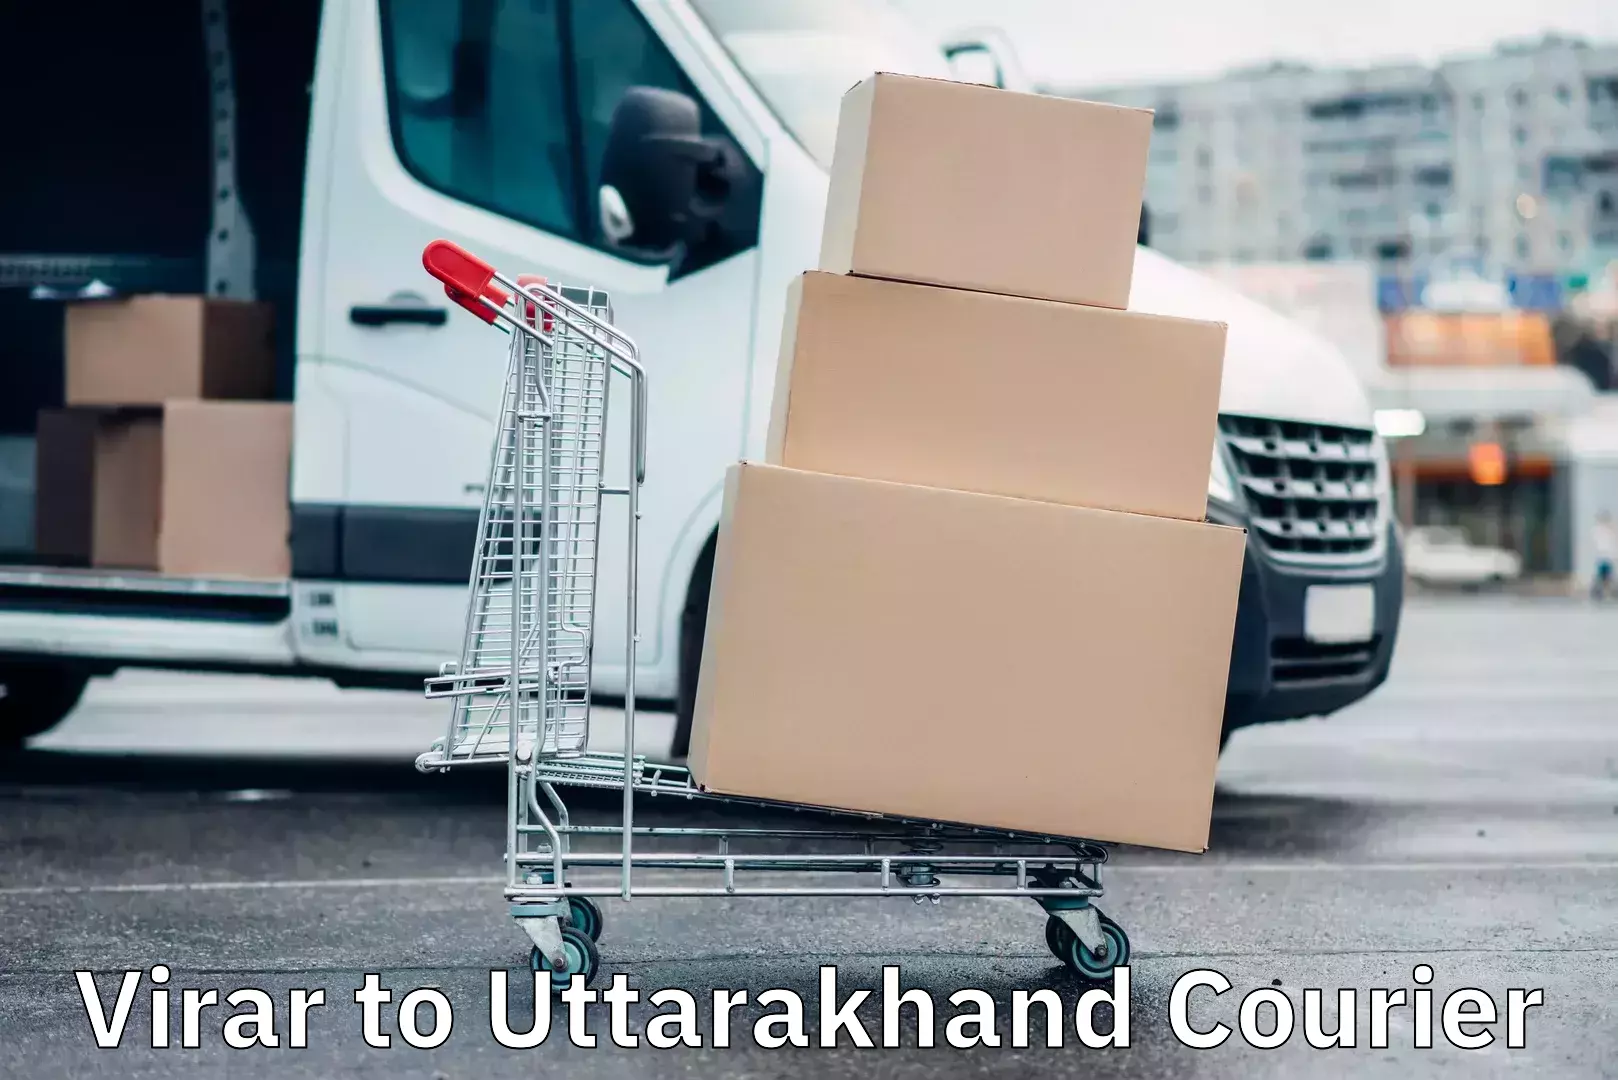 Multi-city courier Virar to Uttarakhand